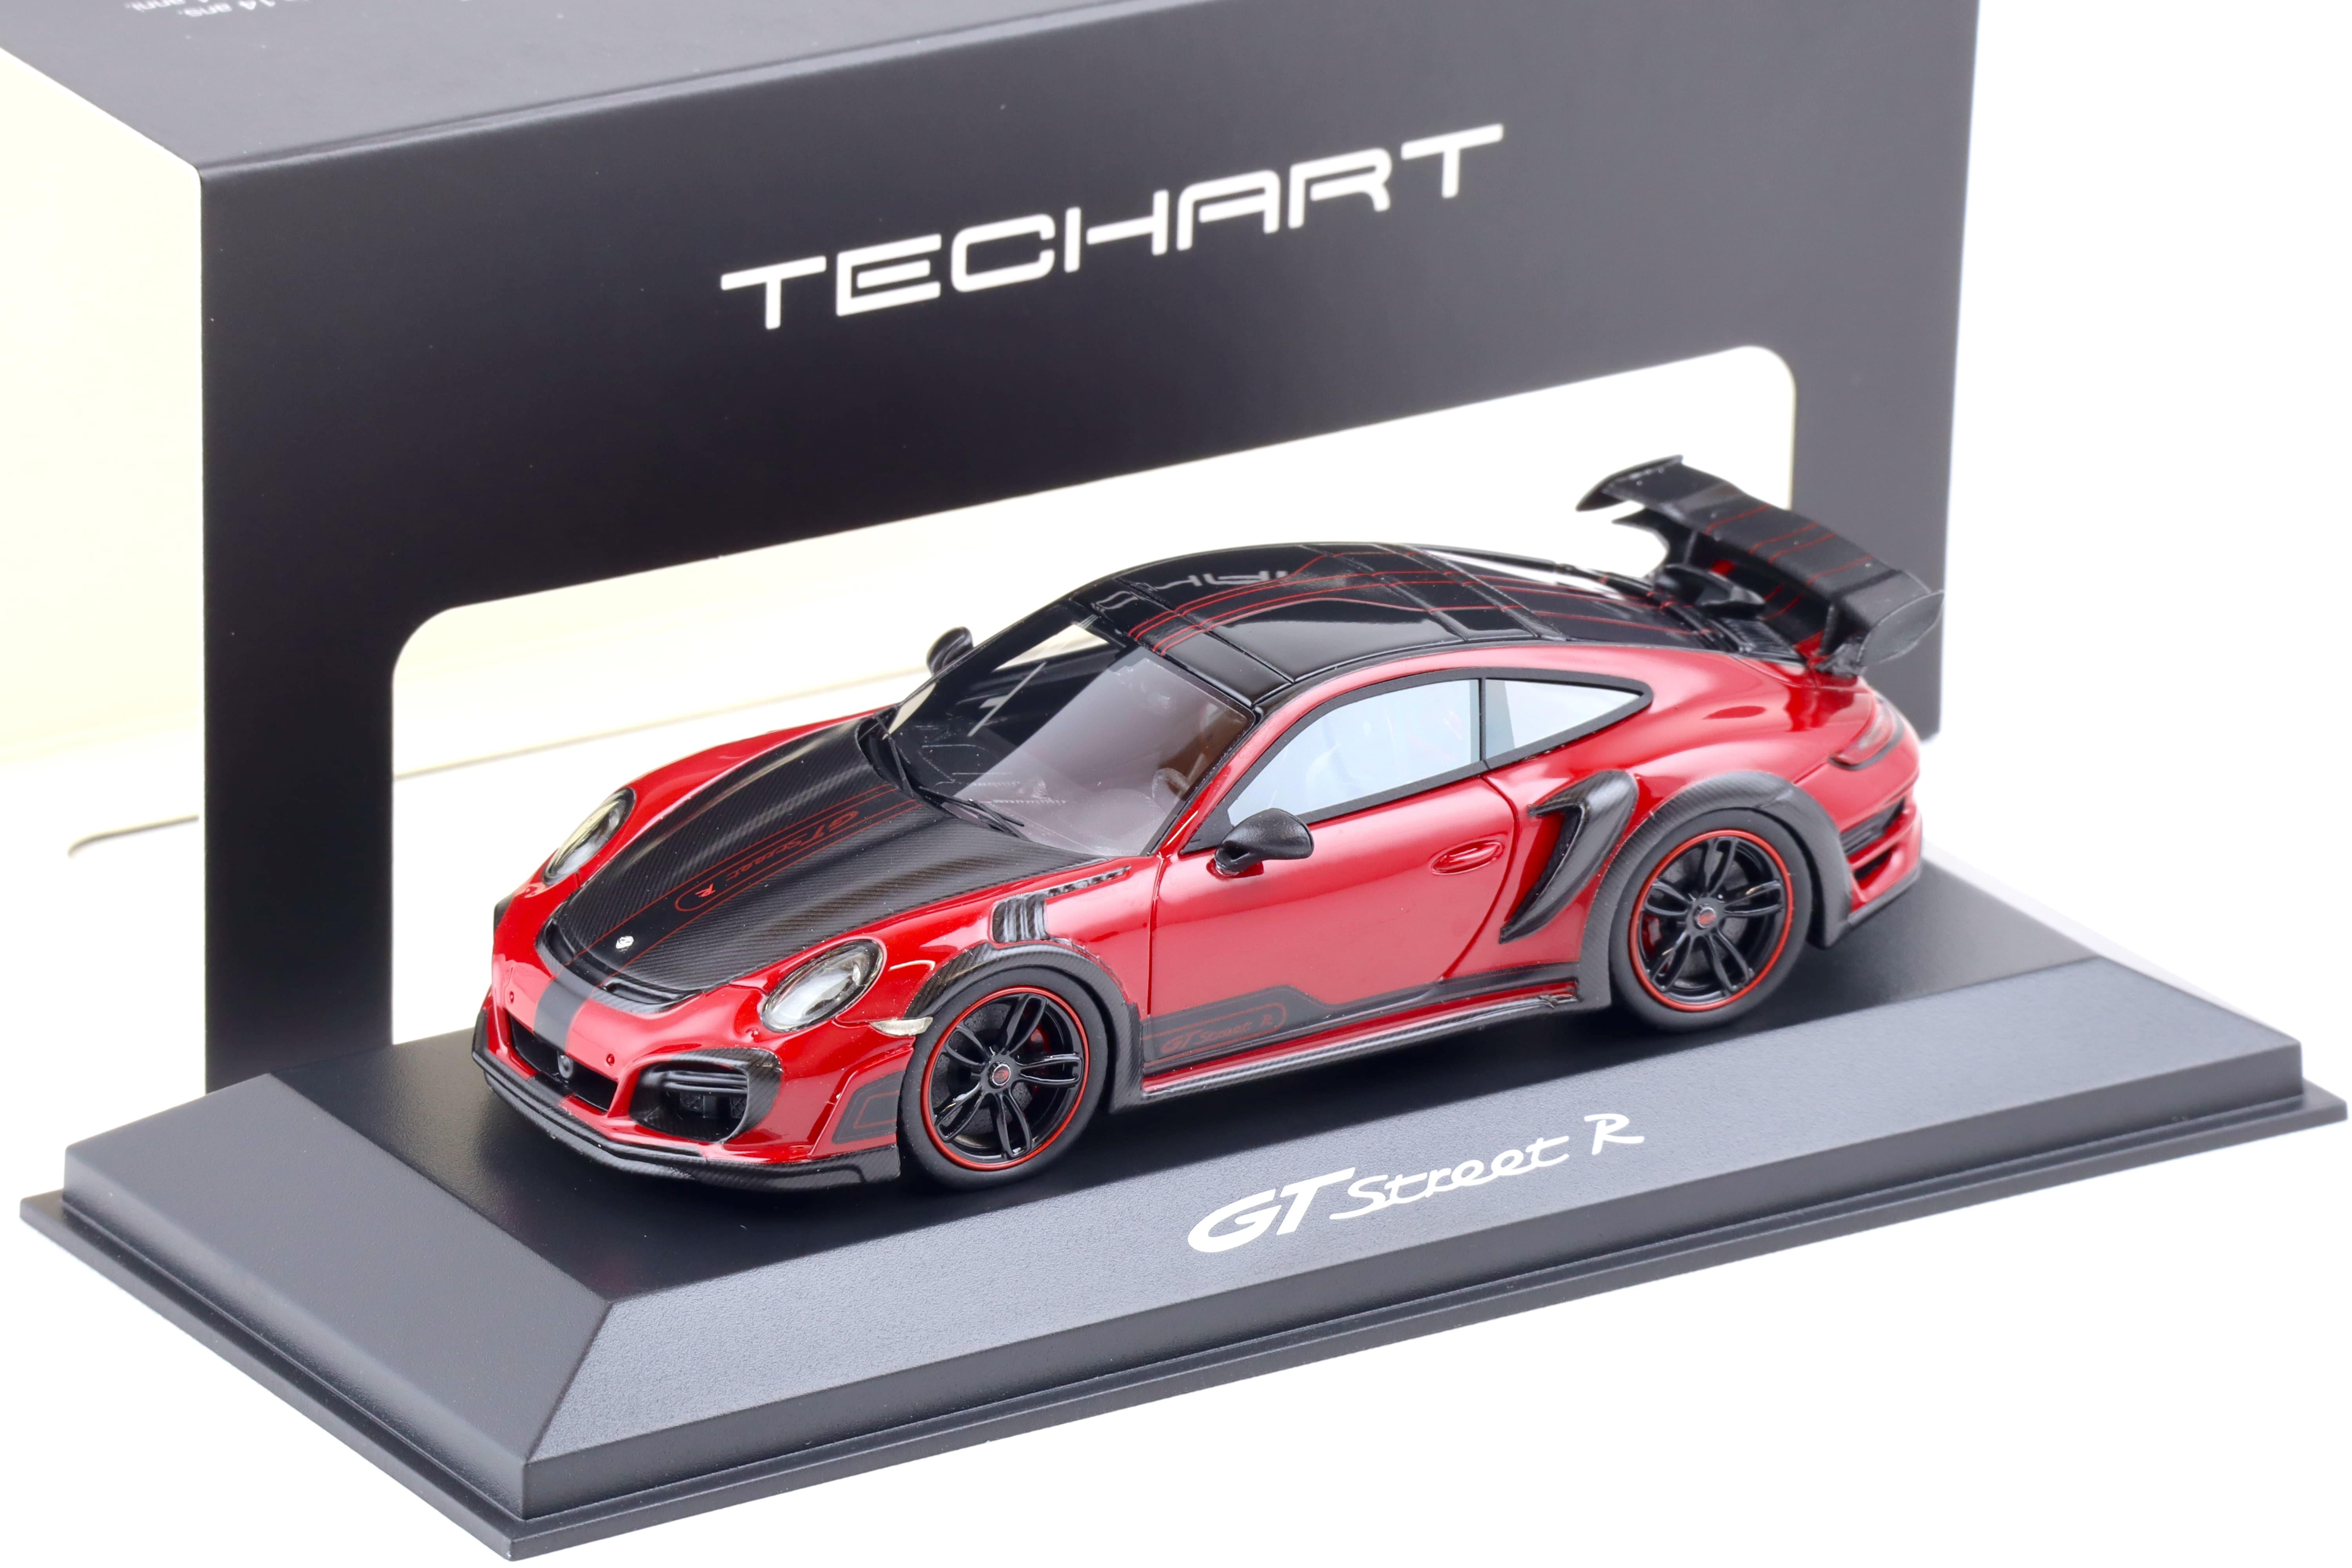 1:43 TECHART Collection Porsche 911 (991) Techart GTStreet R Coupe Karmin red